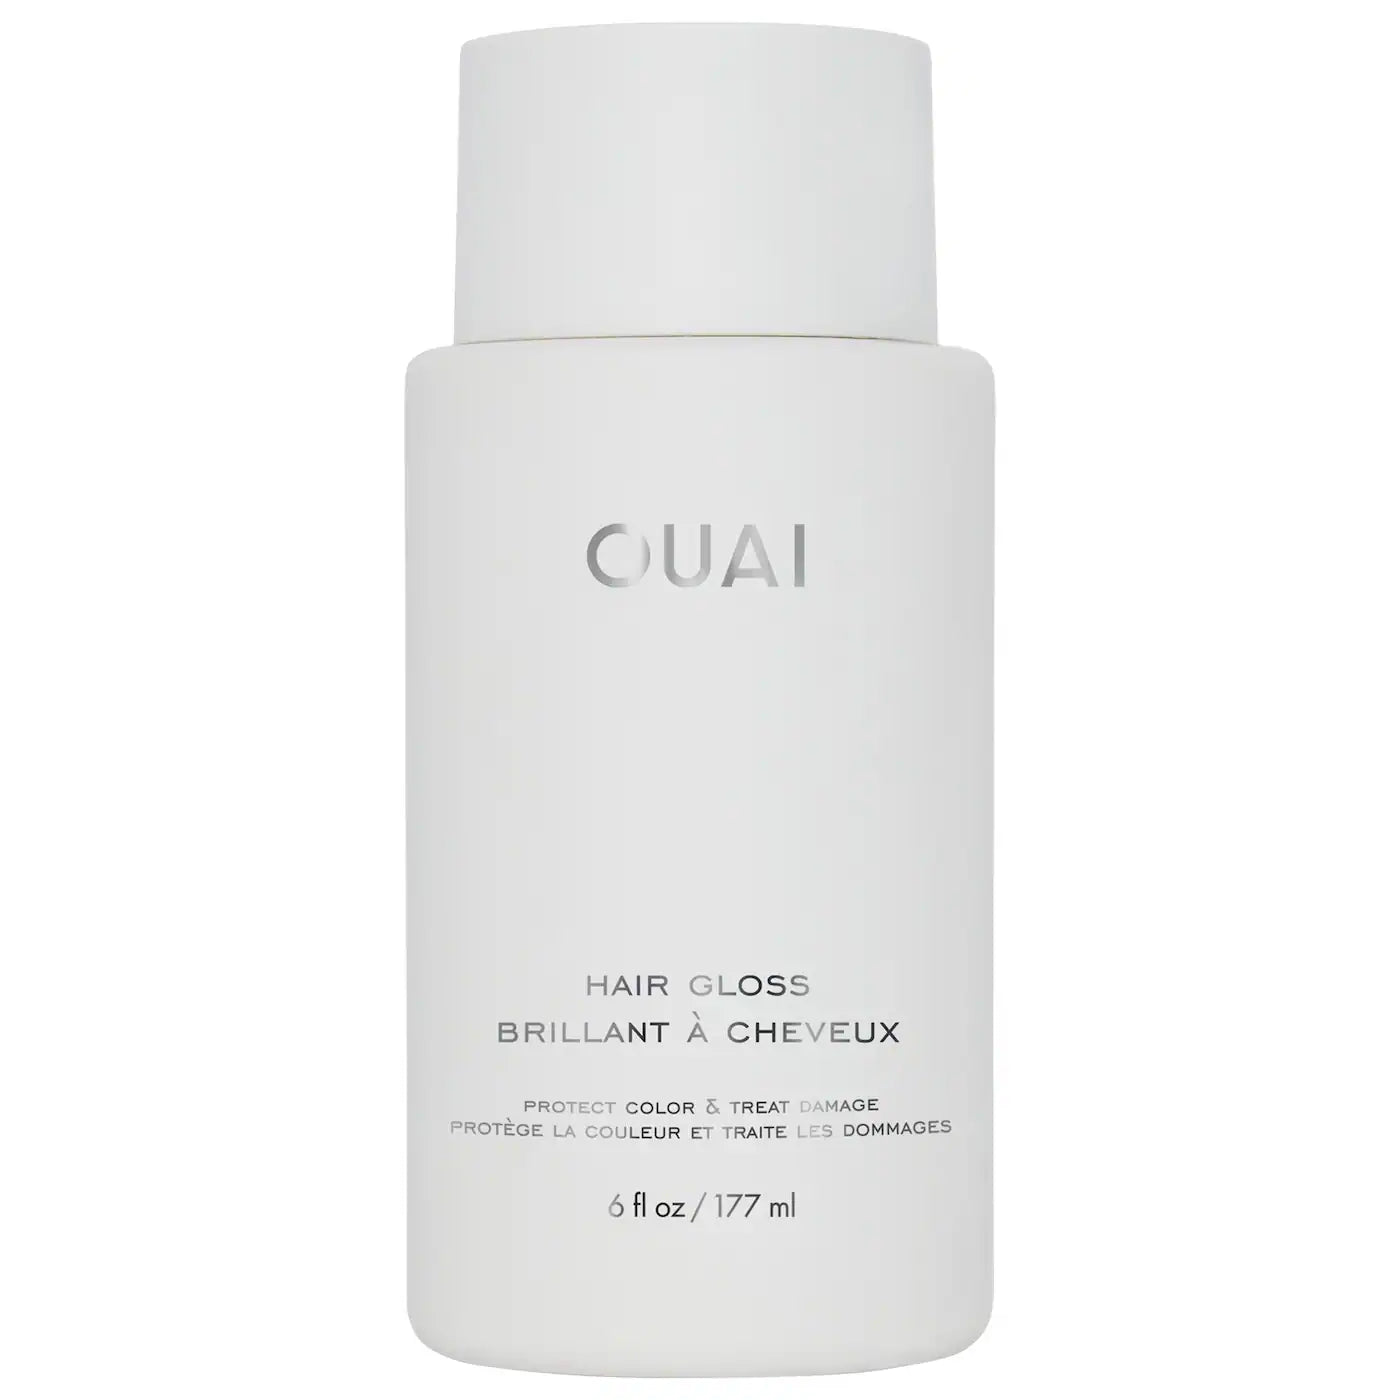 Hair Gloss In-Shower Shine Treatment | OUAI